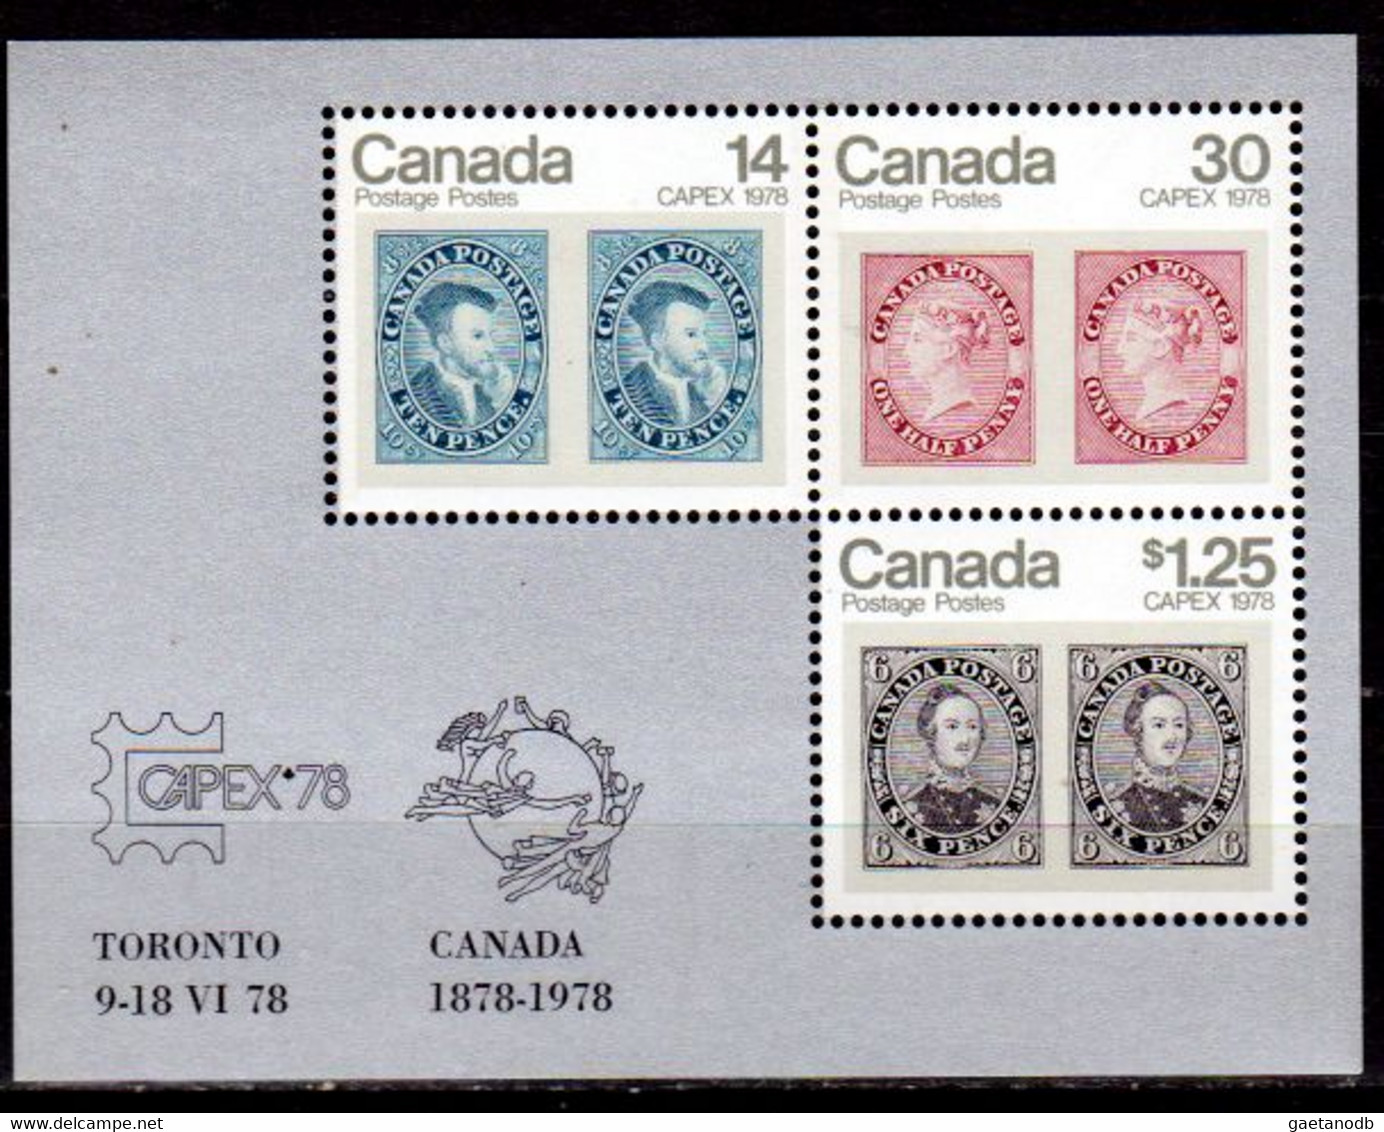 Canada-0065: Emissione 1978 (++) MNH - Qualità A Vostro Giudizio. - Pagine Del Libretto